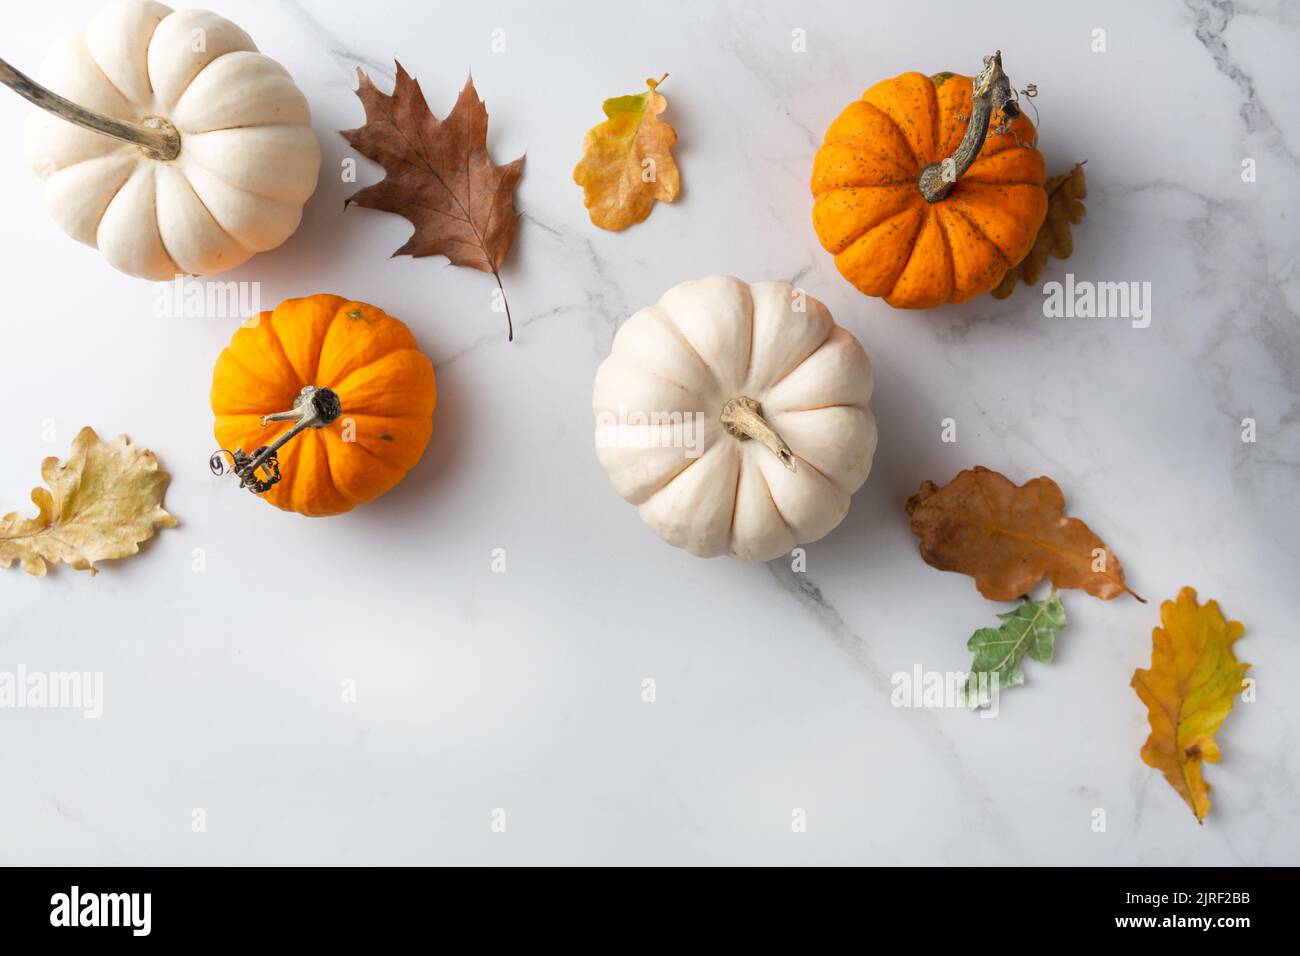 Zucca bianca e arancione su superficie di marmo cibo vista dall'alto Foto Stock